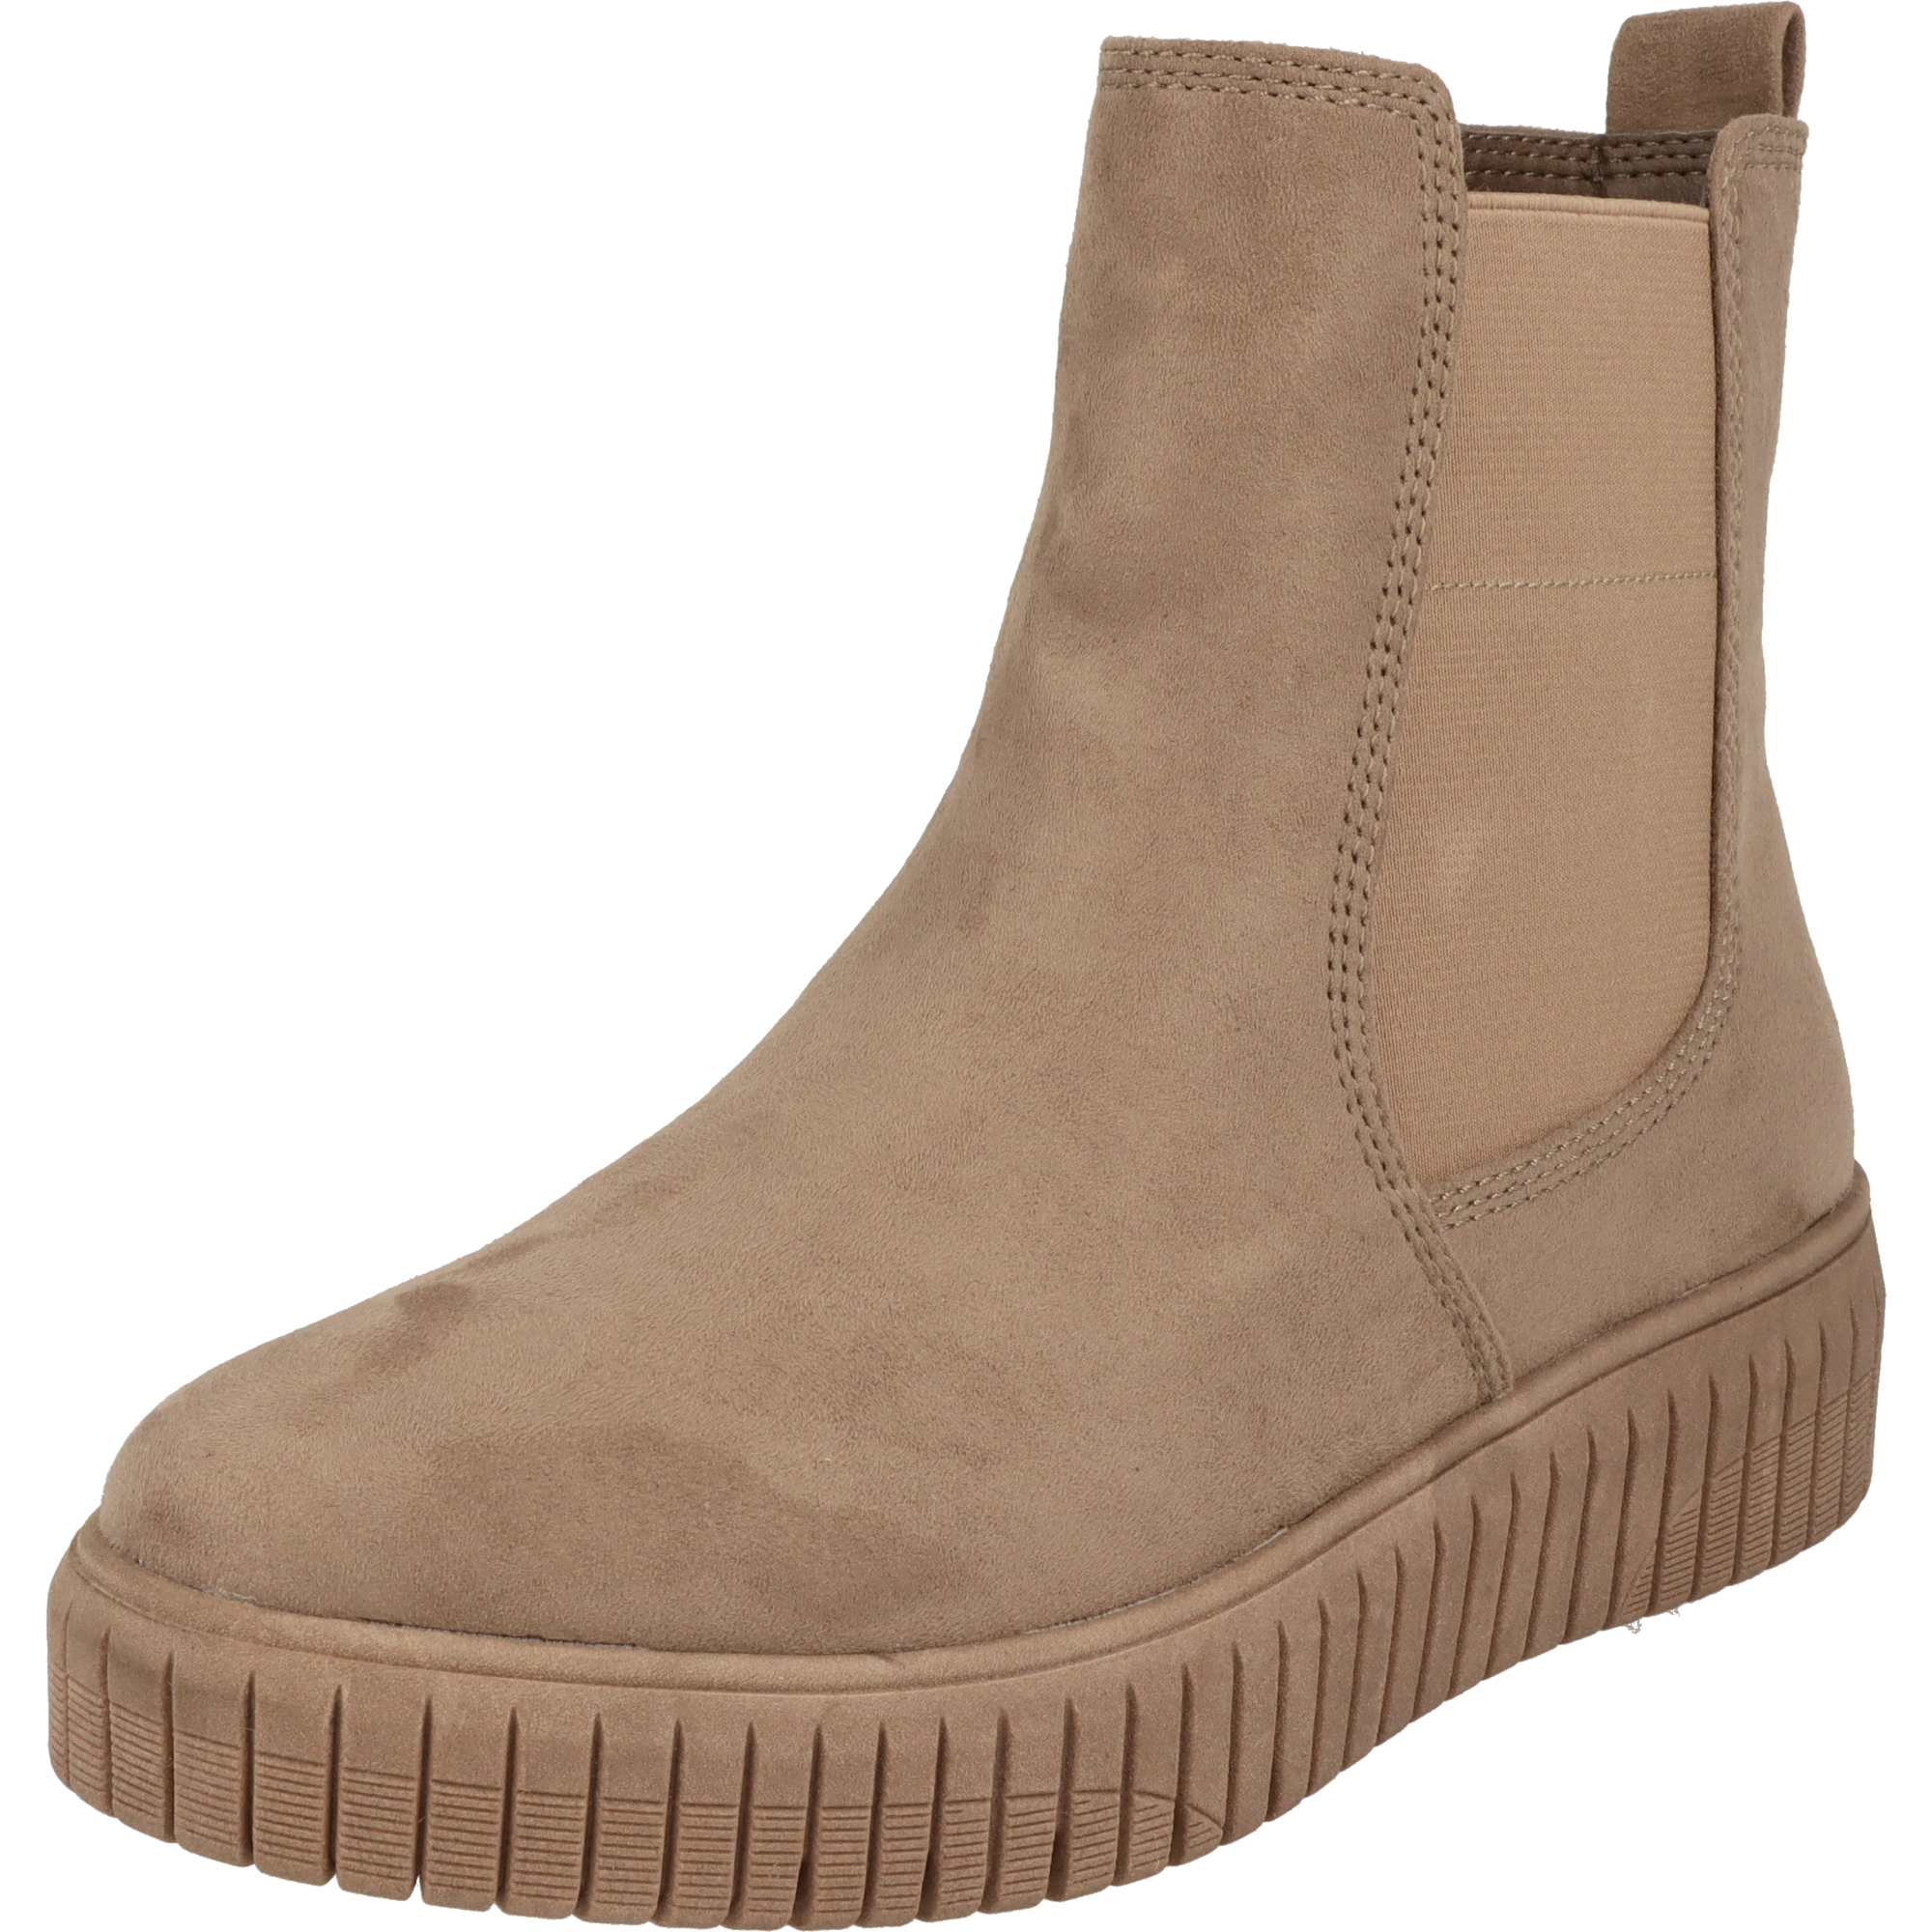 Jana Damen Schuhe H-Weite modische Chelsea Boots Stiefel 8-25461-41 Stone